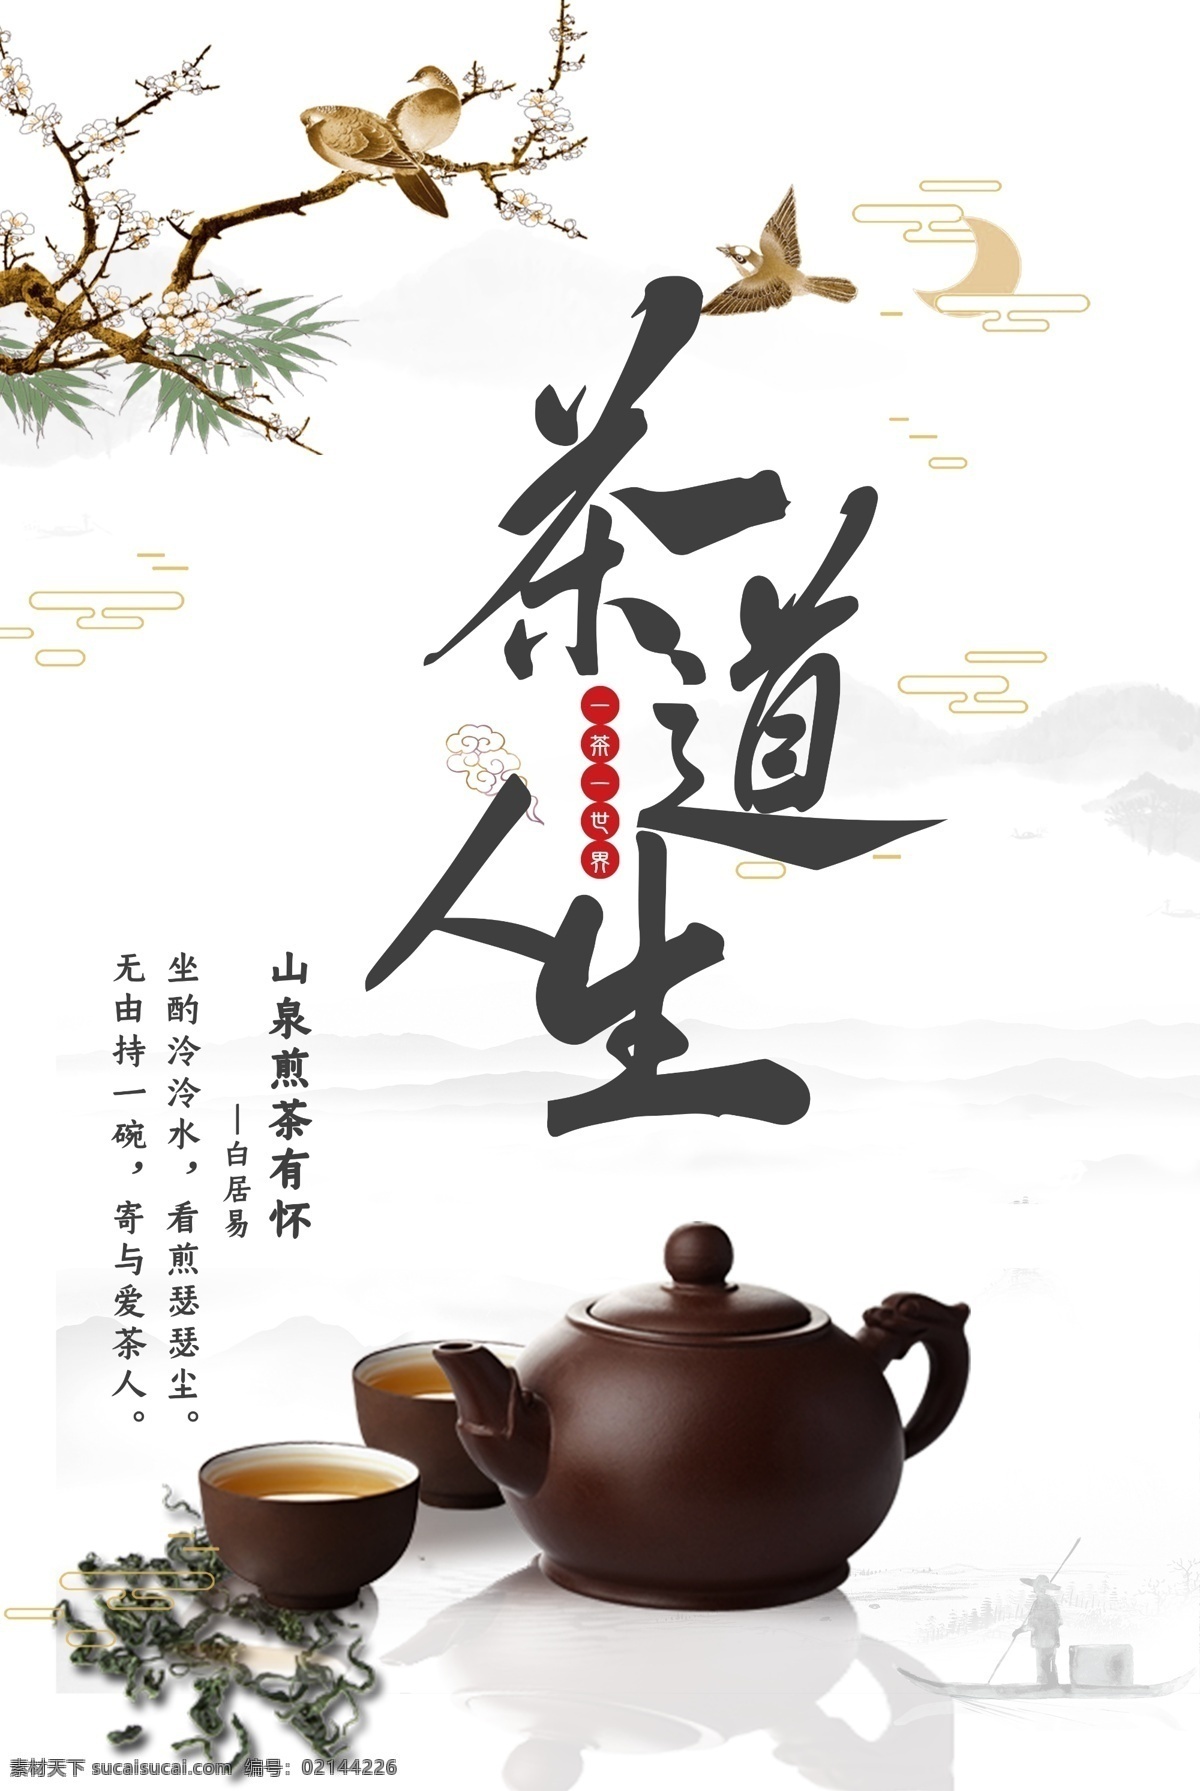 茶道人生图片 茶道 茶艺 喝茶 春茶 茶叶 茶具 手绘 传统 祥云 分层